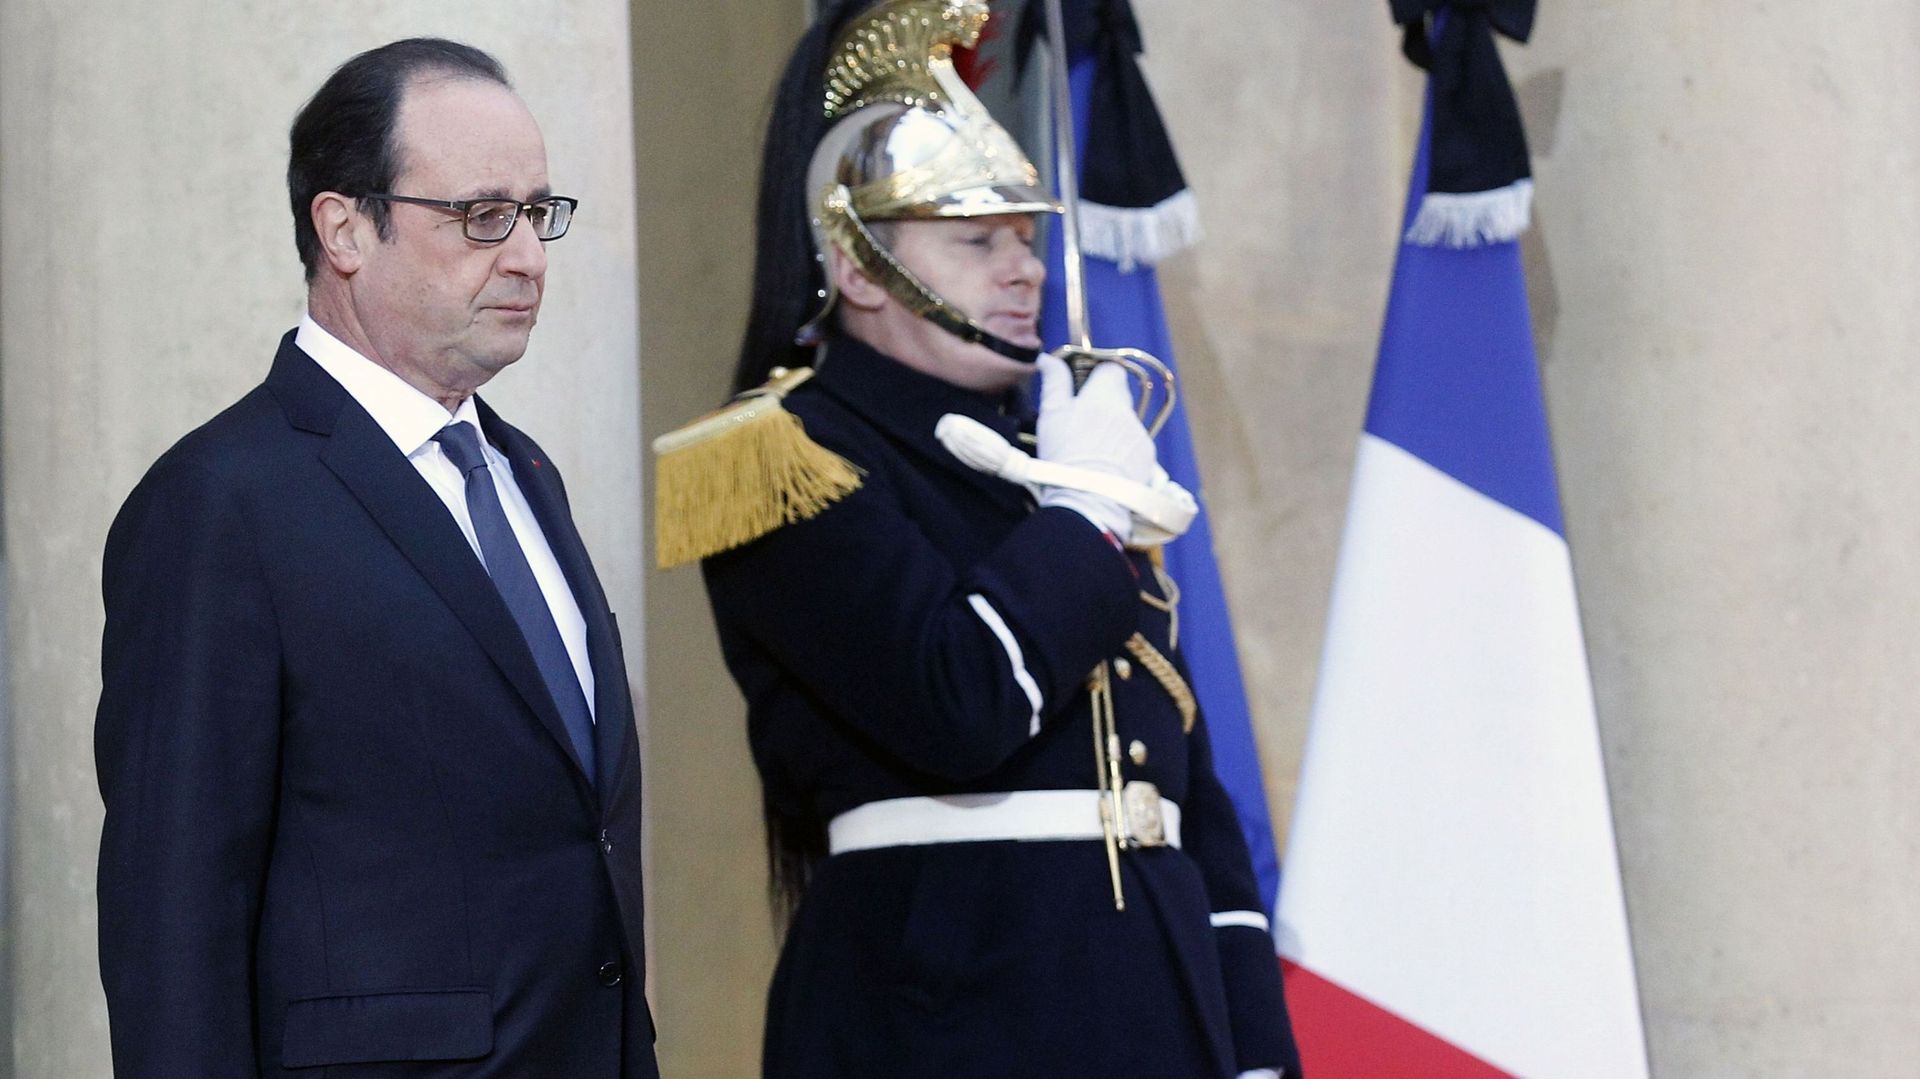 Charlie Hebdo: Hollande, confronté à une crise majeure, prône l'union nationale